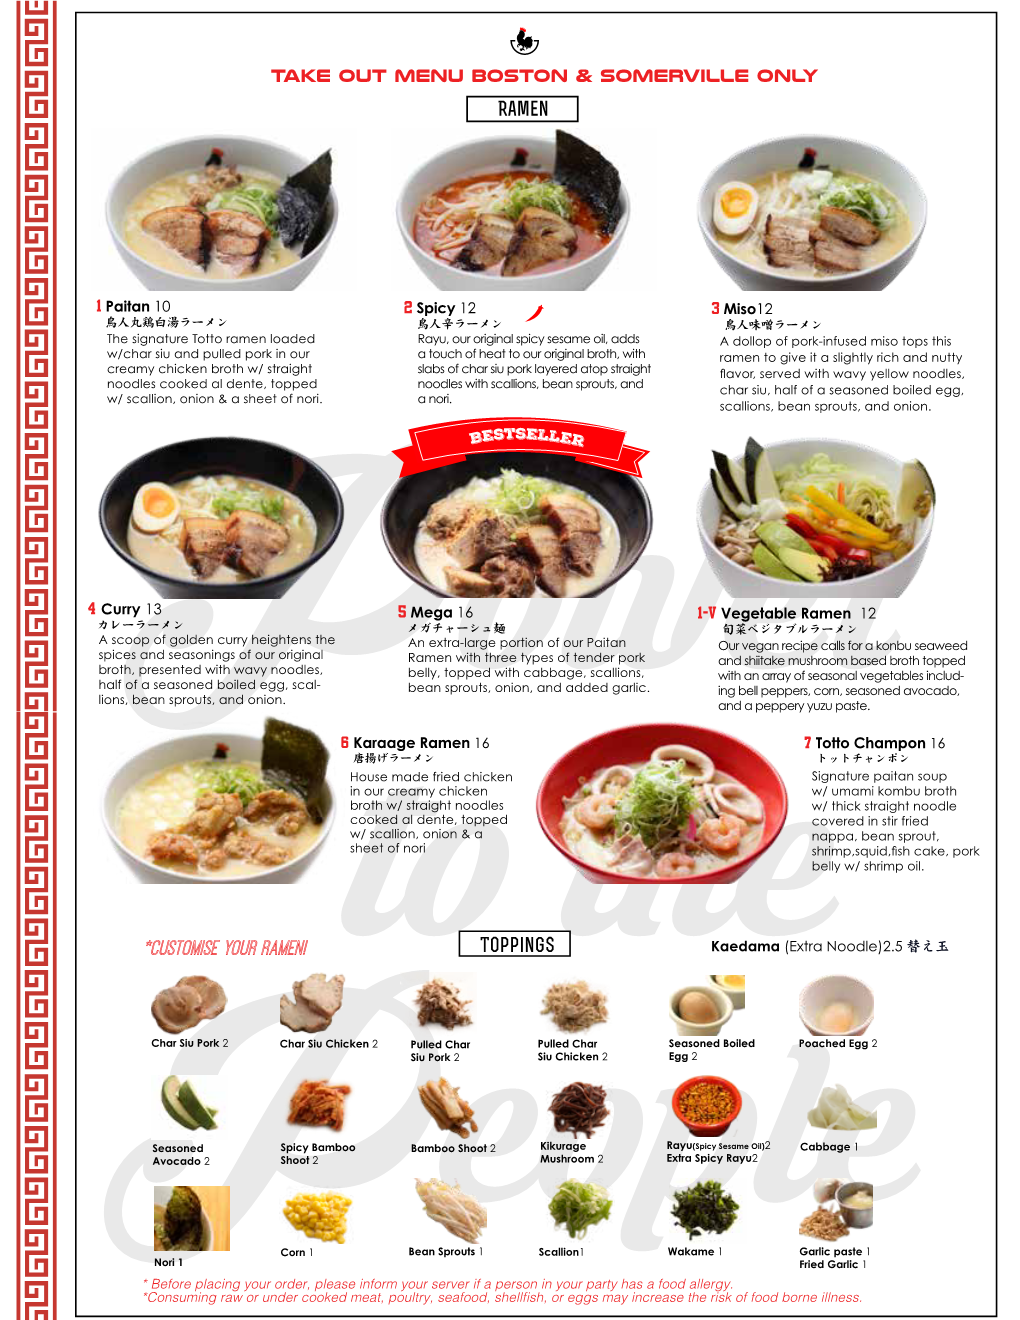 *Customise Your Ramen! Toppings Kaedama (Extra Noodle)2.5 替え玉